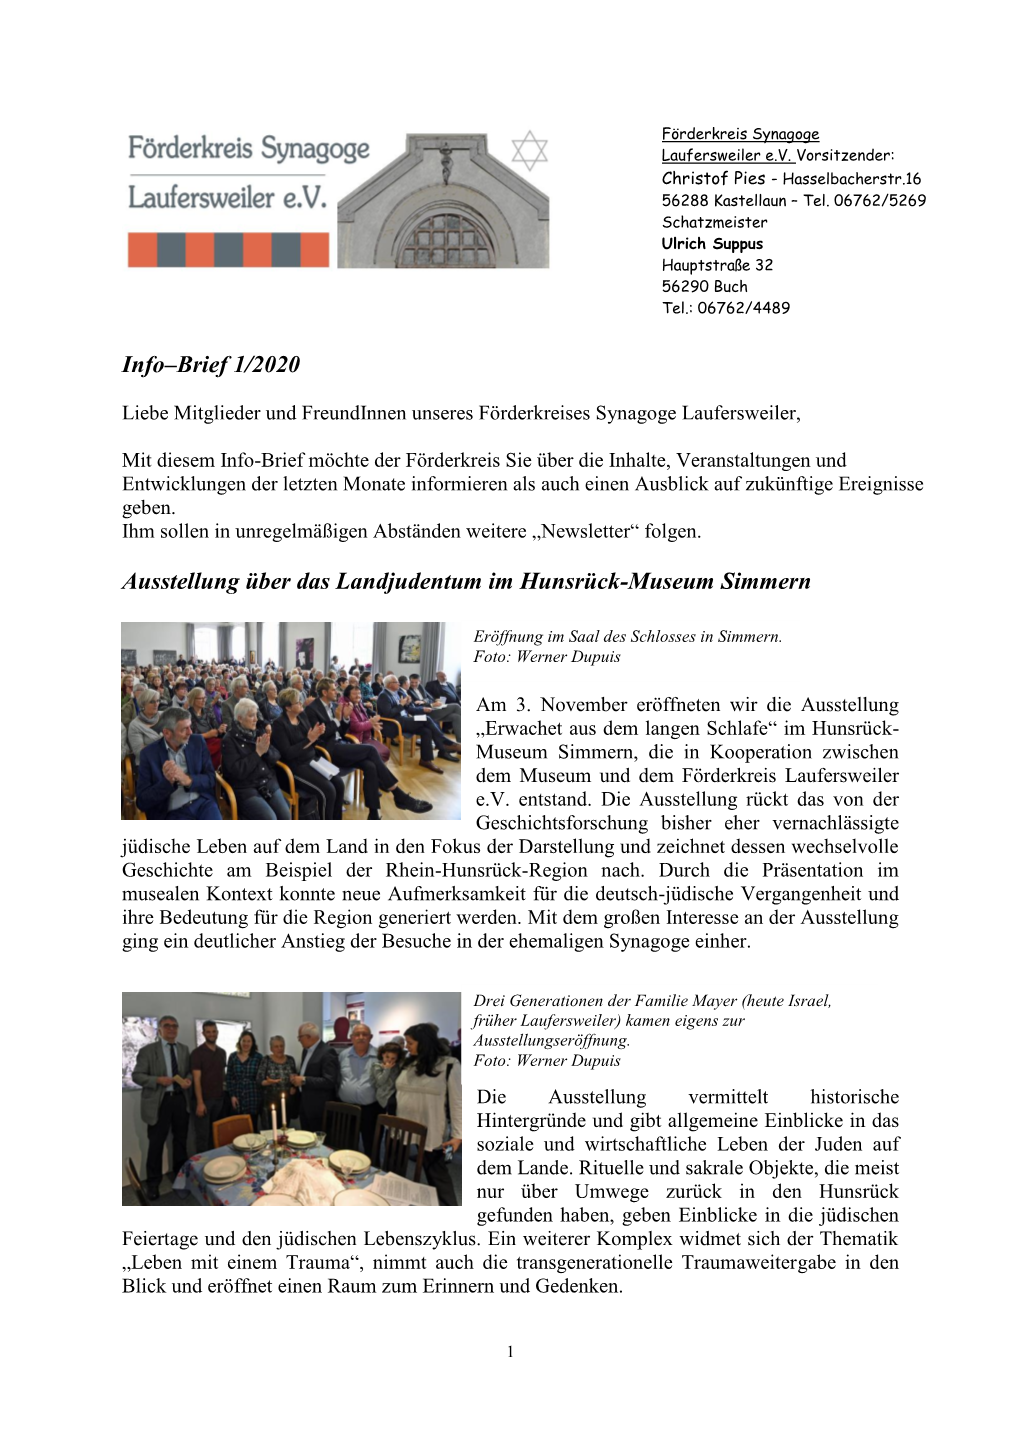 Info–Brief 1/2020 Ausstellung Über Das Landjudentum Im Hunsrück